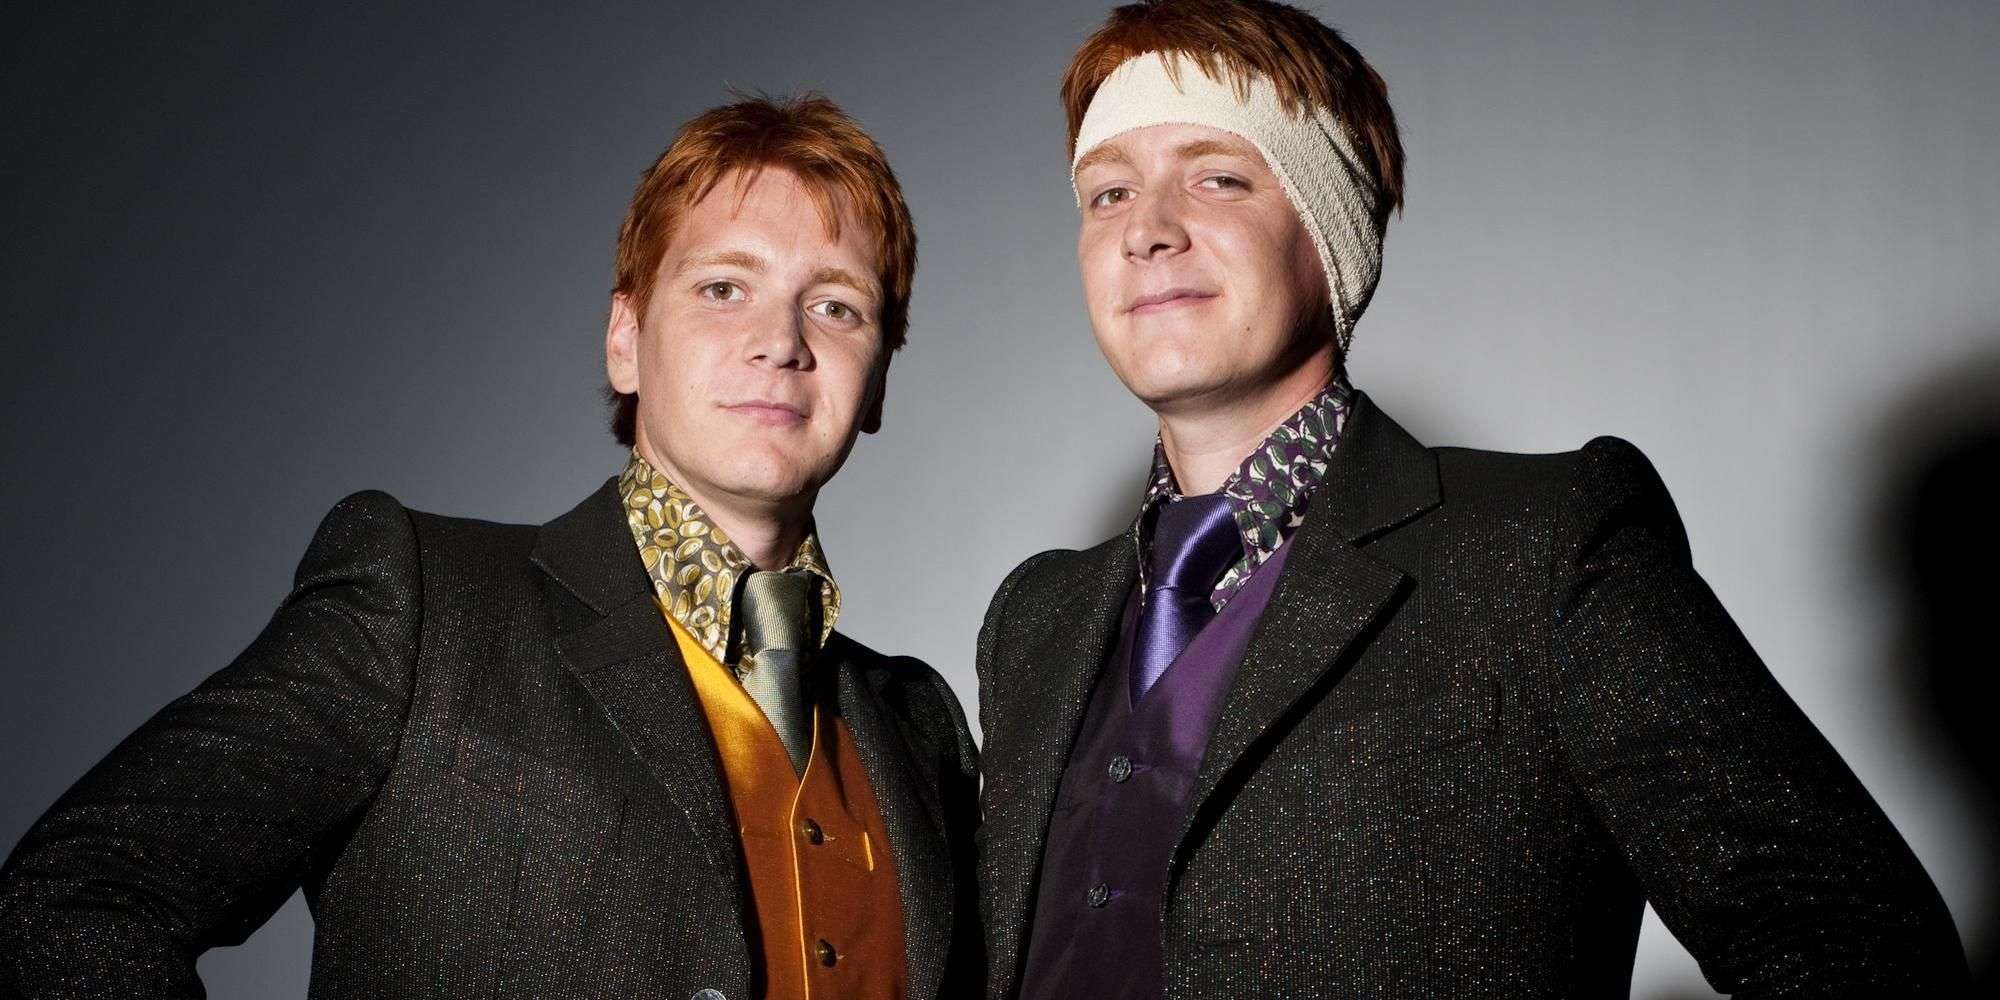 Harry Potter Weasley Twins Actors Didn